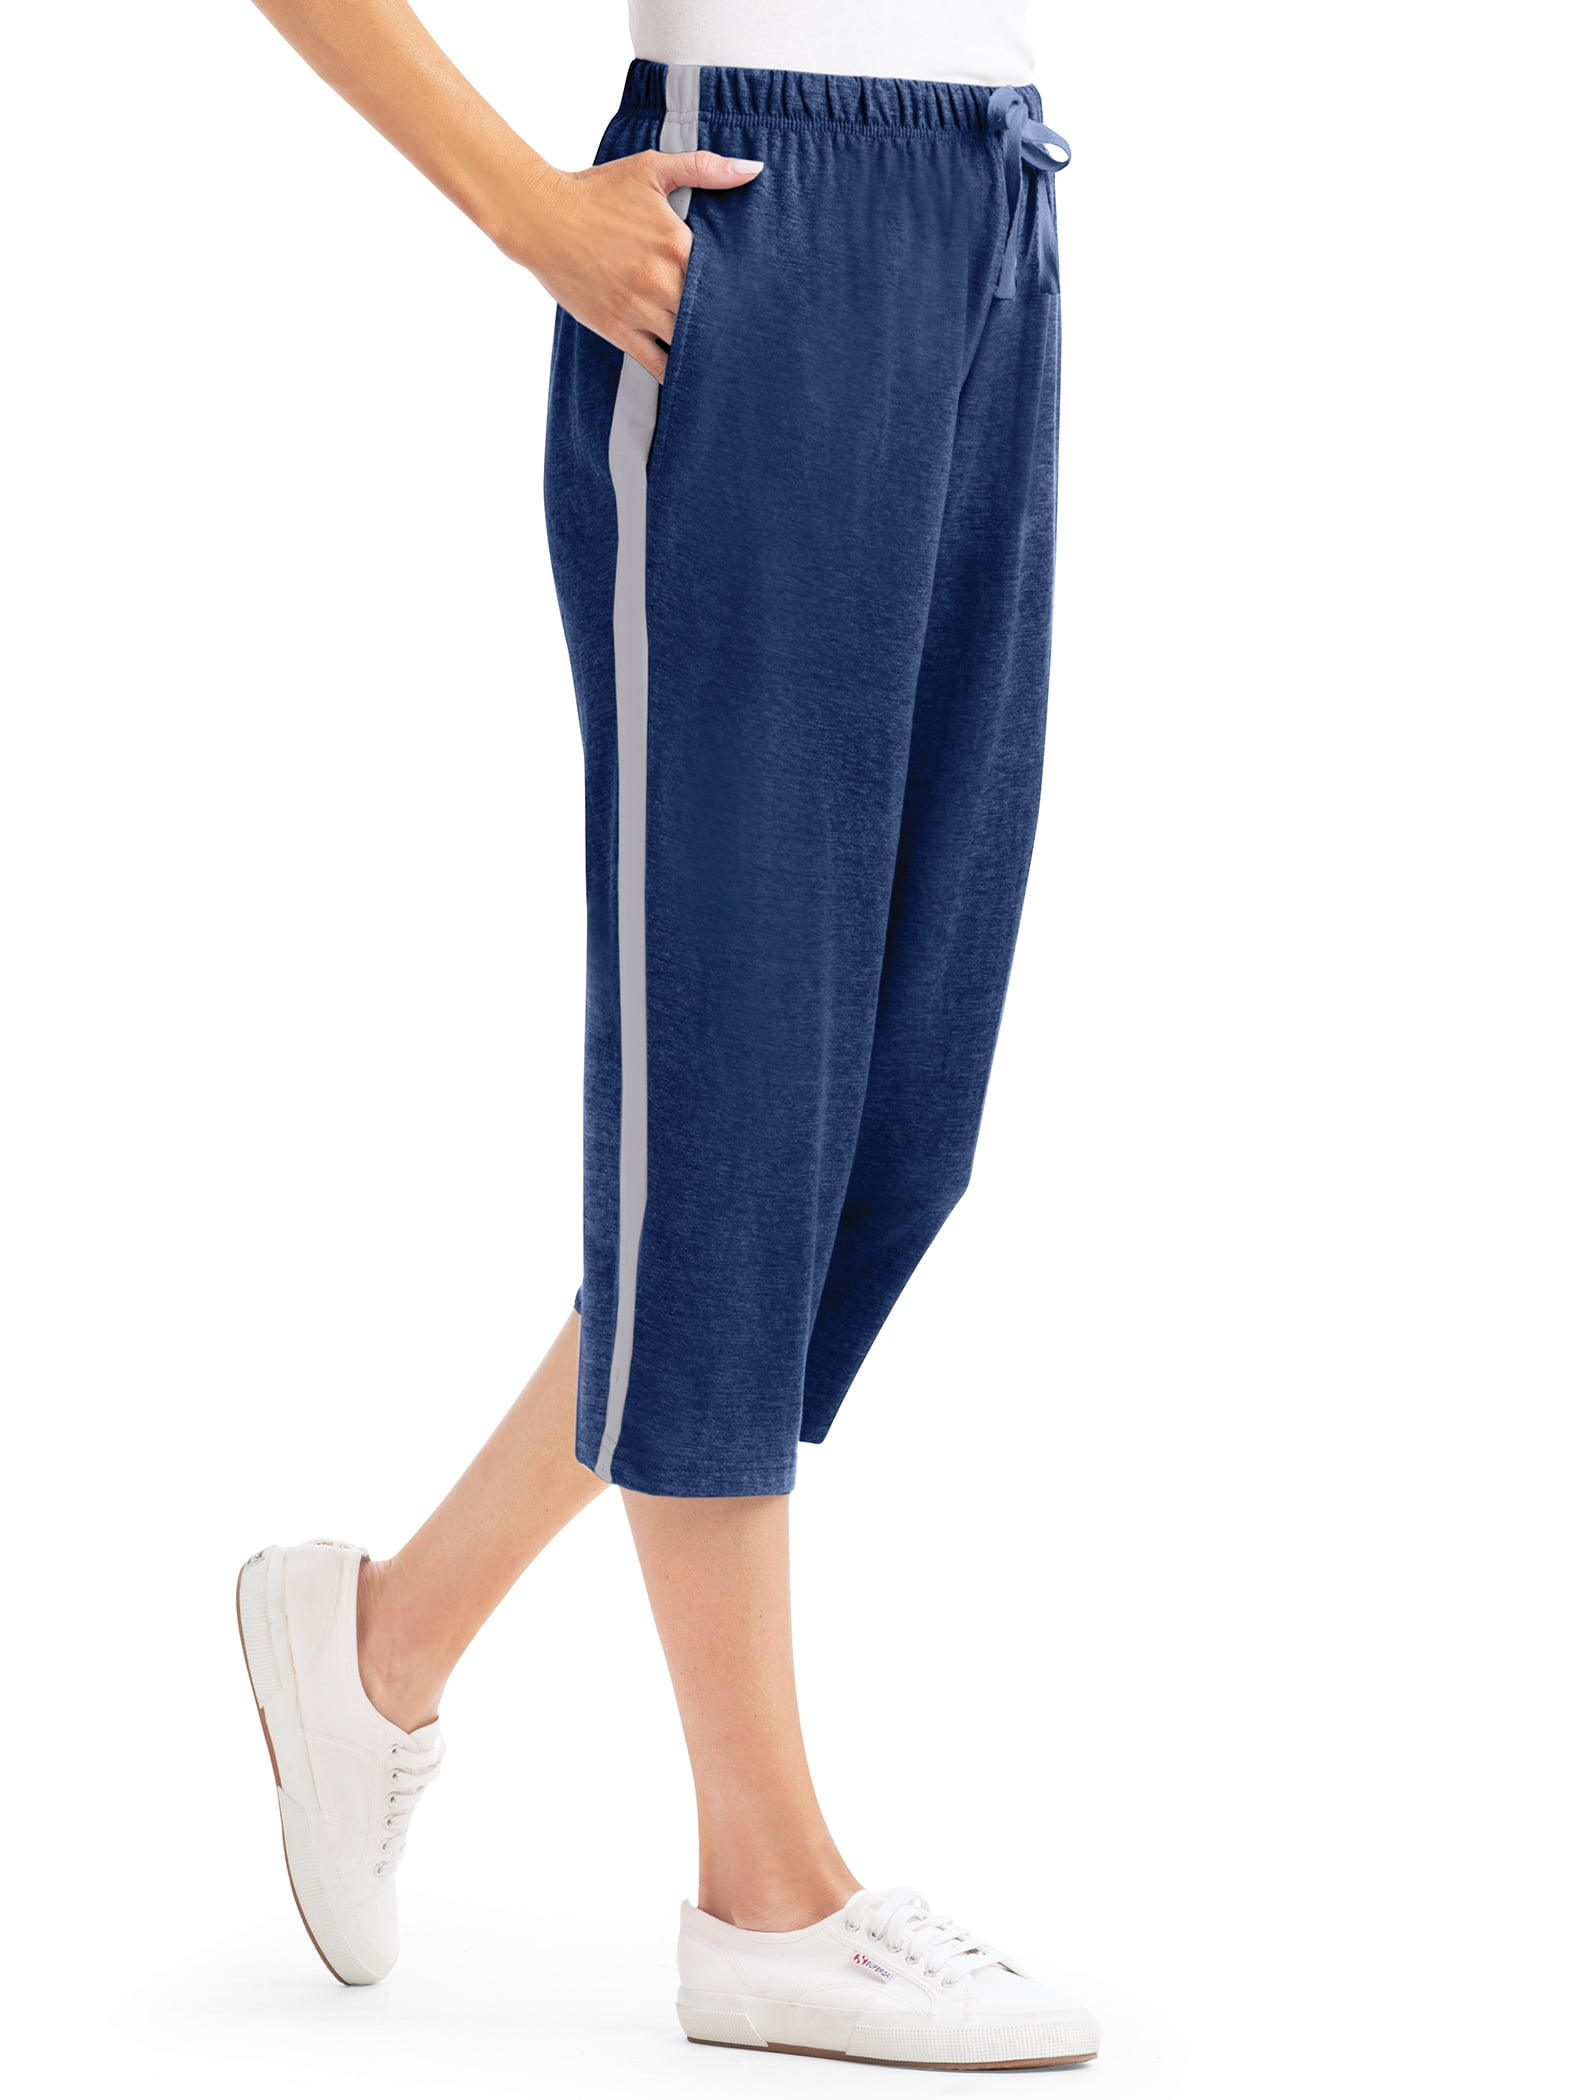 ALWAYS Women's Premium Super Soft Spandex Shorts Teal XL 